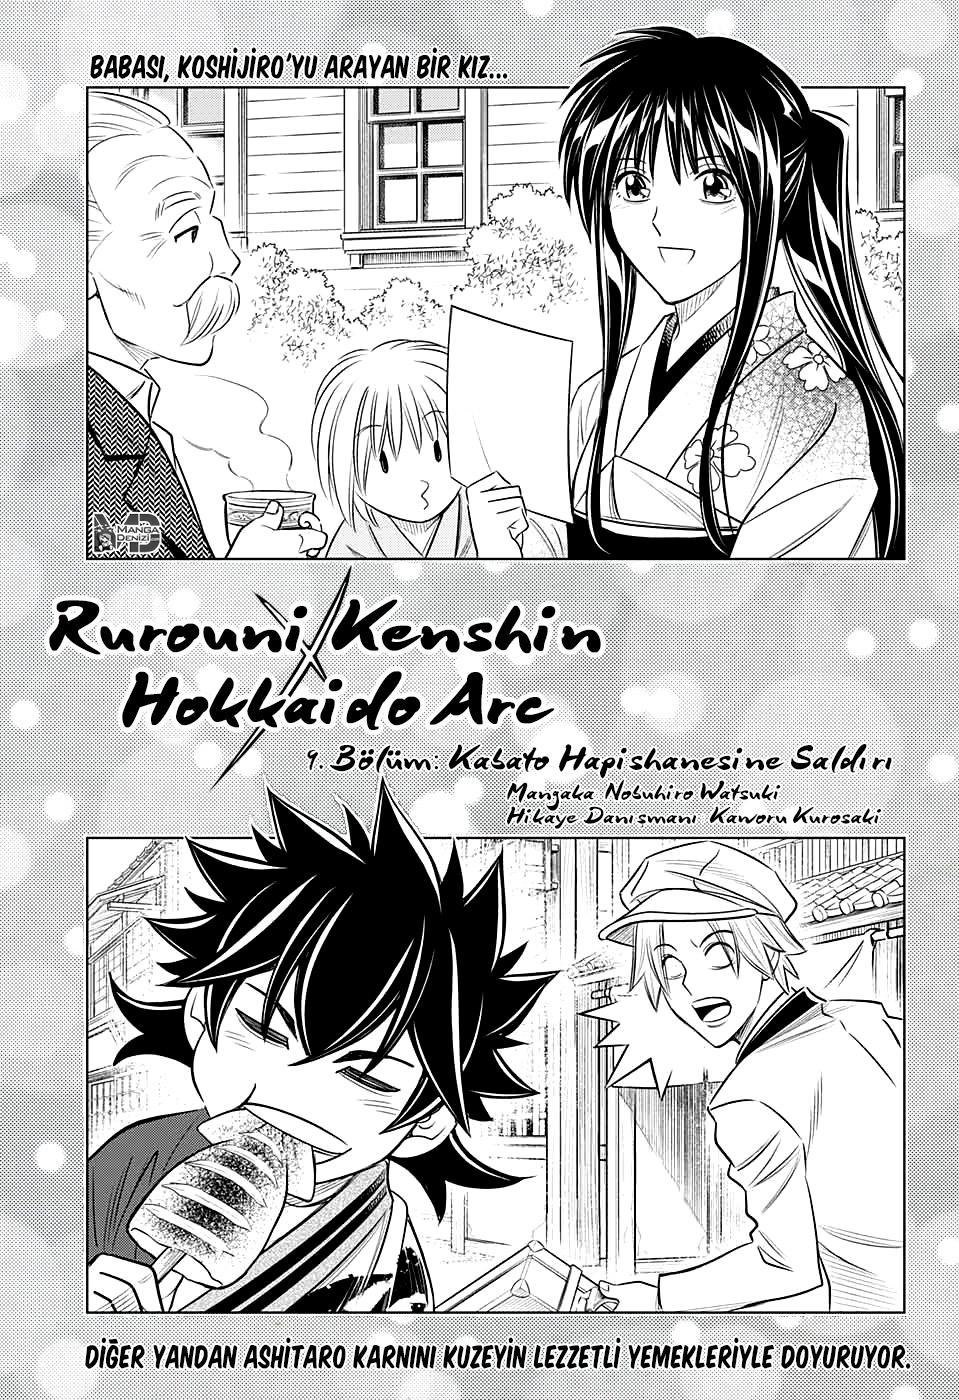 Rurouni Kenshin: Hokkaido Arc mangasının 09 bölümünün 2. sayfasını okuyorsunuz.